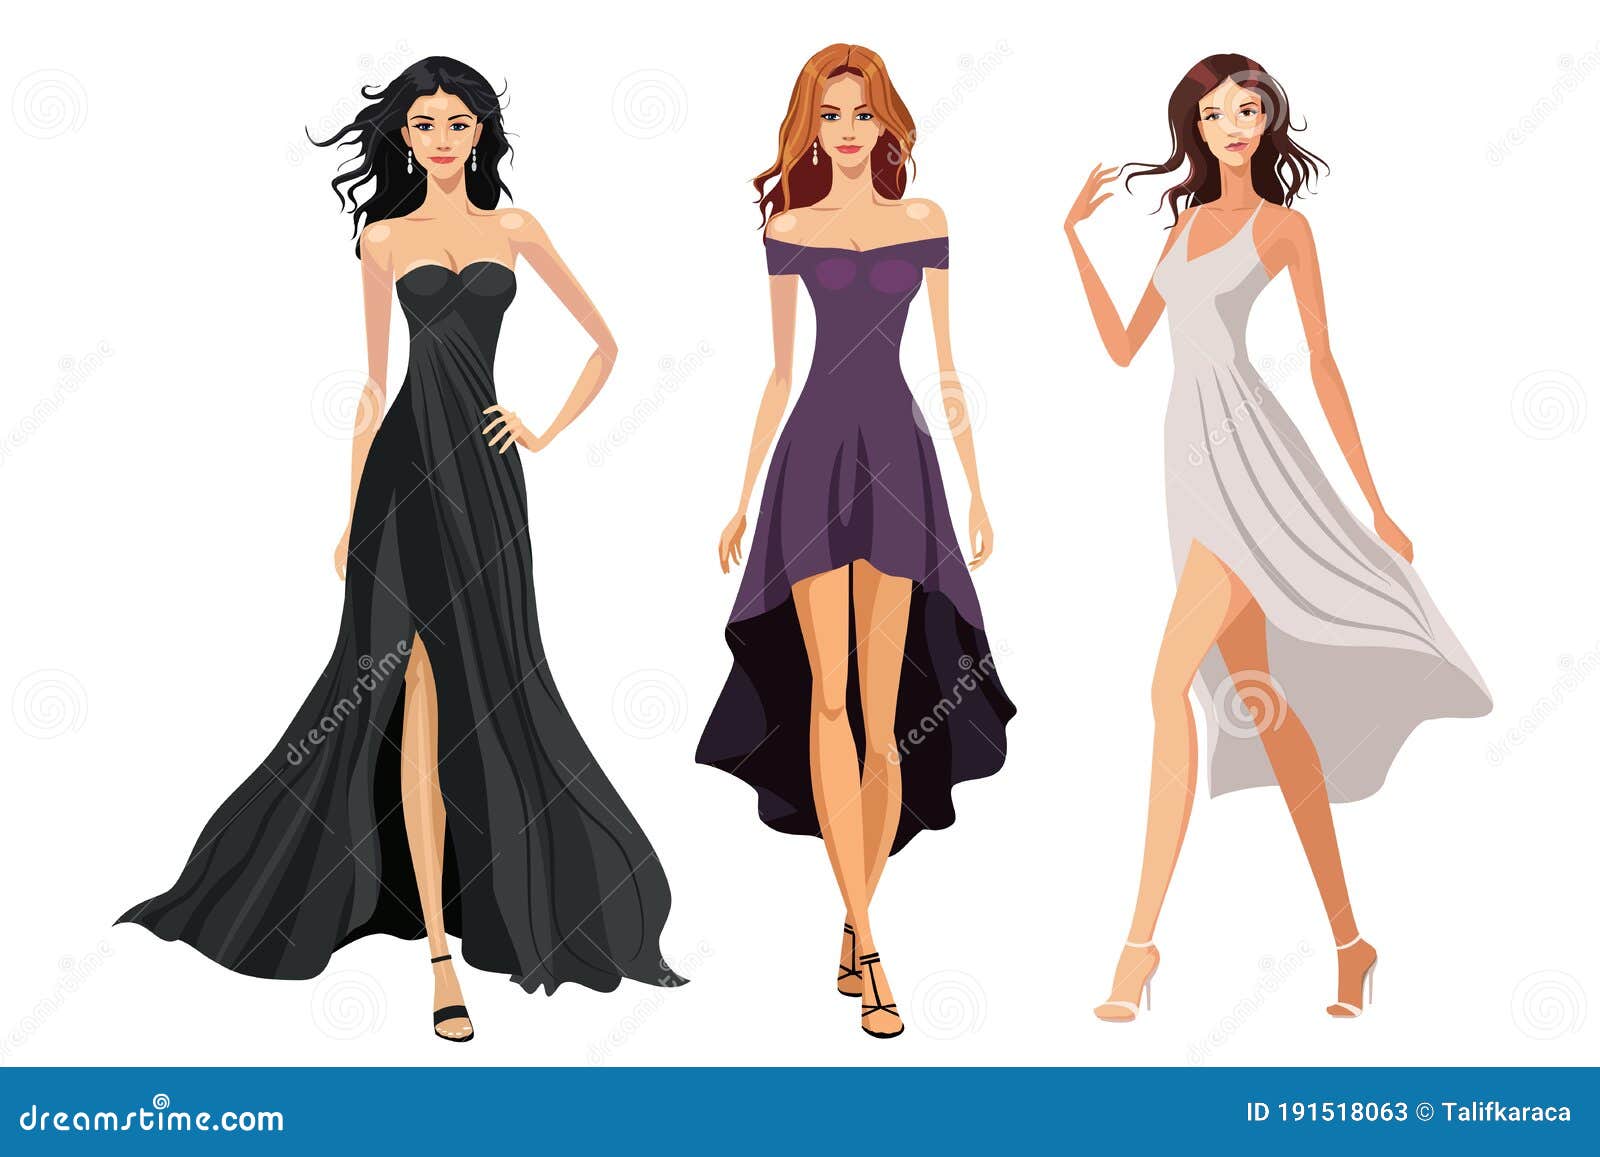 Women in Evening Dresses. Vector Illustration on White Background Stock ...